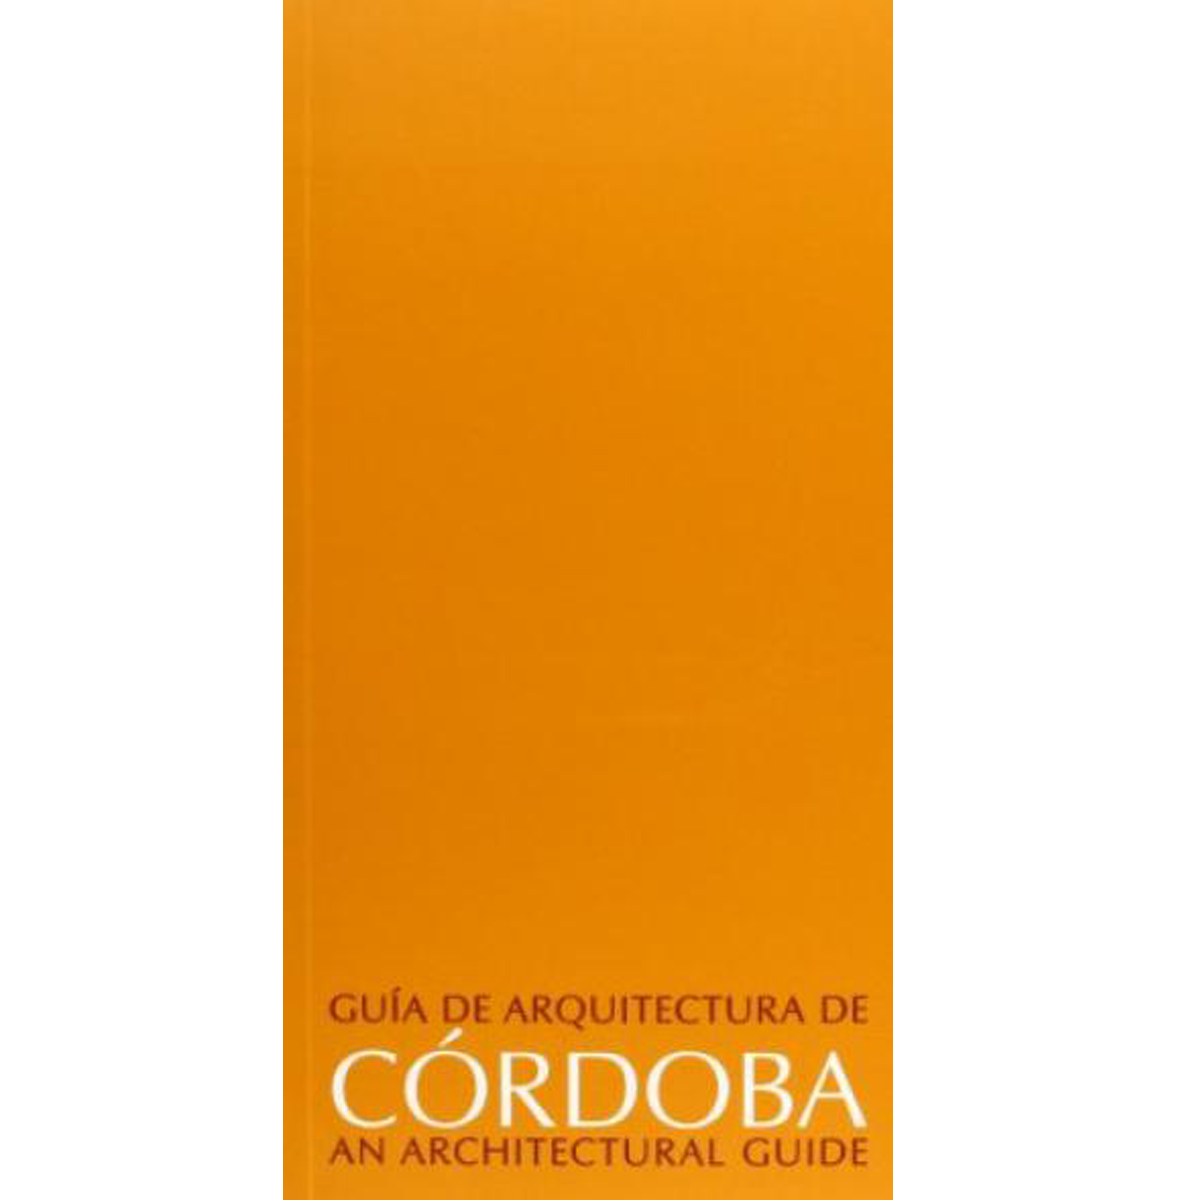 Guía de arquitectura de Córdoba